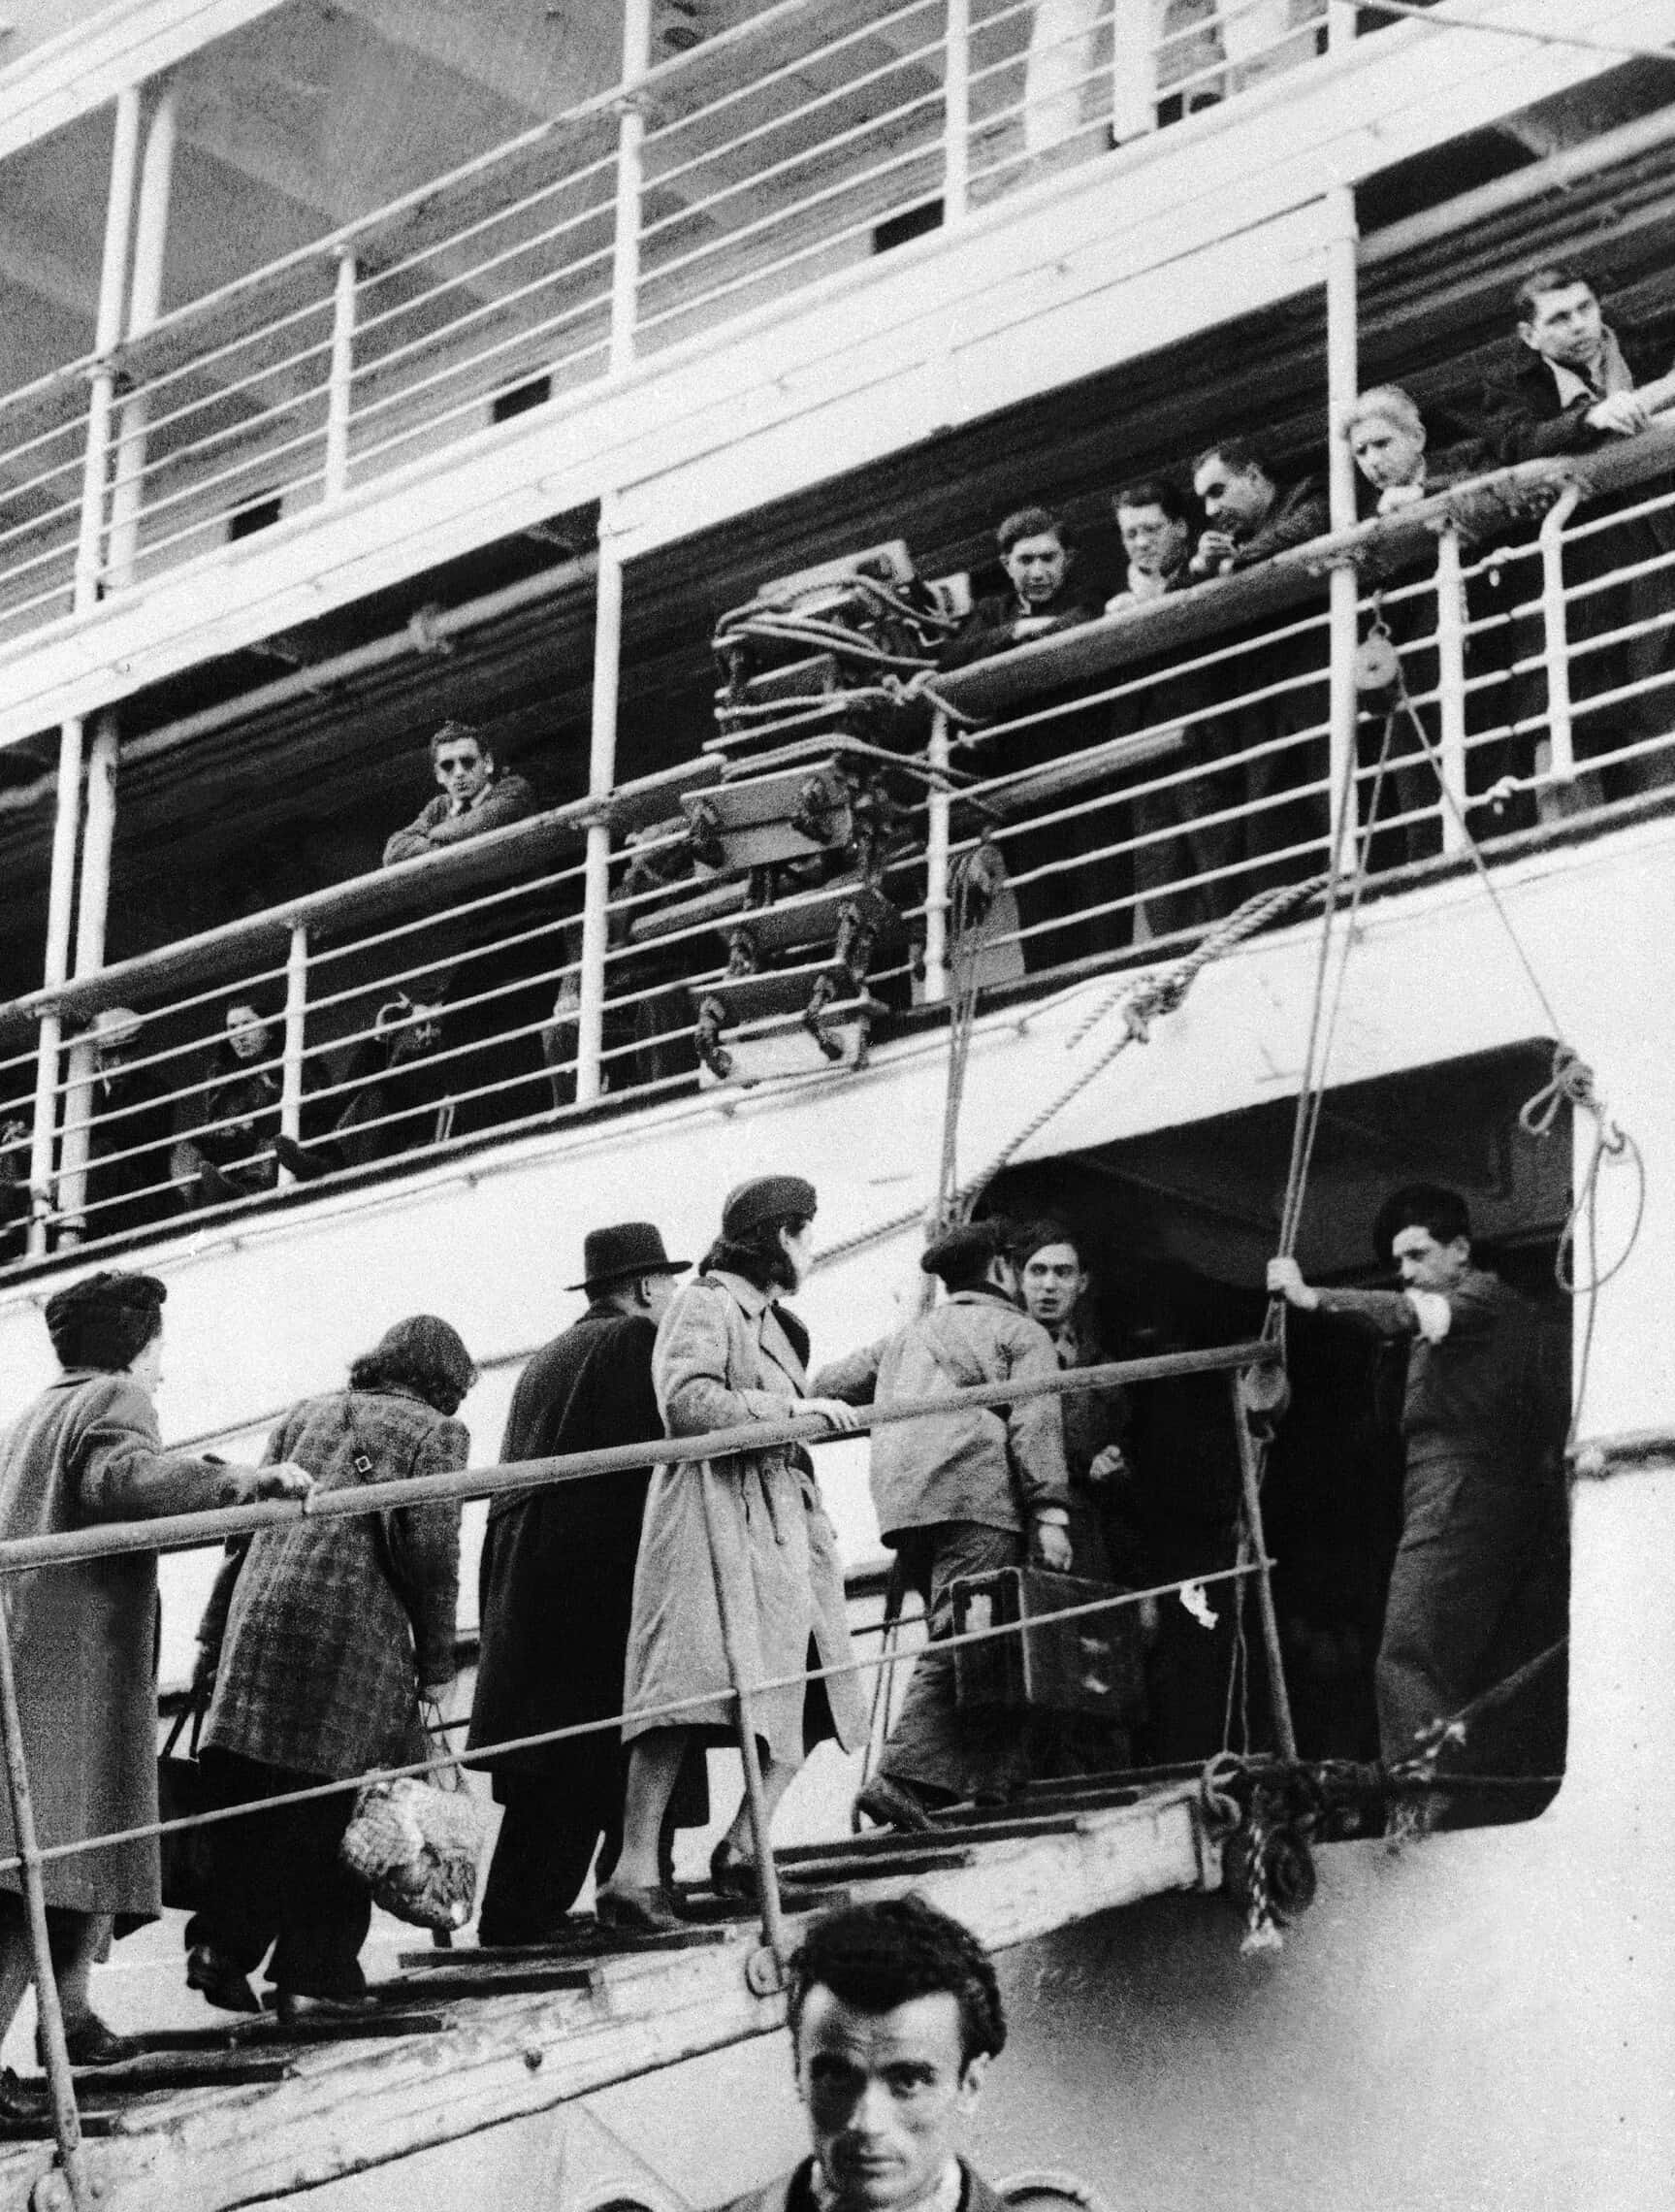 565 יהודים מפולין, אוסטריה והונגריה עולים על האונייה ההולנדית יוהאן דוויט במרסיי, צרפת, בדרכם לאוסטרליה, 8 בפברואר 1947 (צילום: AP Photo)